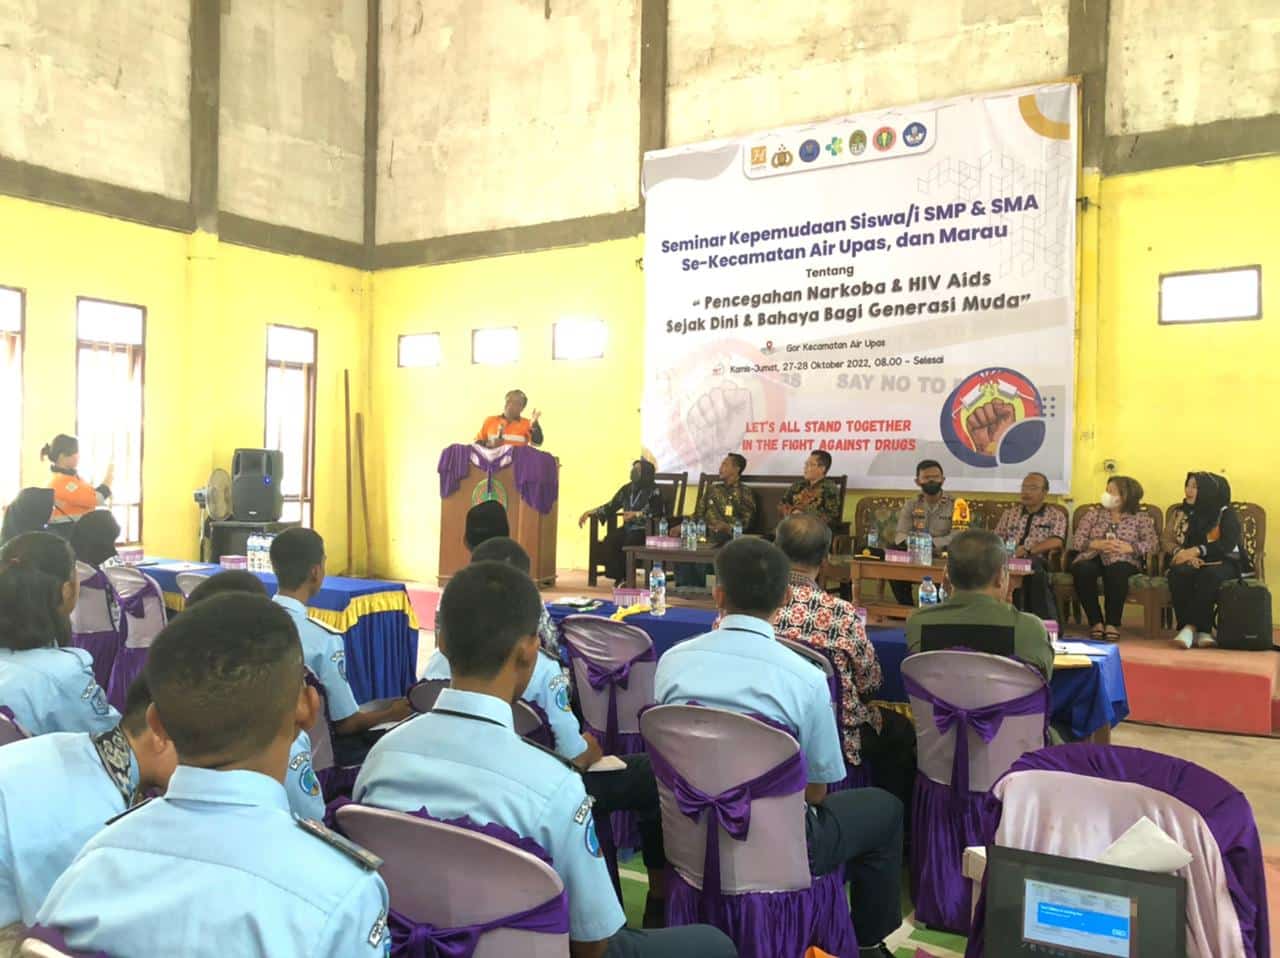 Seminar kepemudaan yang digelar oleh PT Cita Mineral Investindo Tbk (Harita Group), di gedung Serbaguna Kecamatan Air Upas. (Foto: Adi LC)